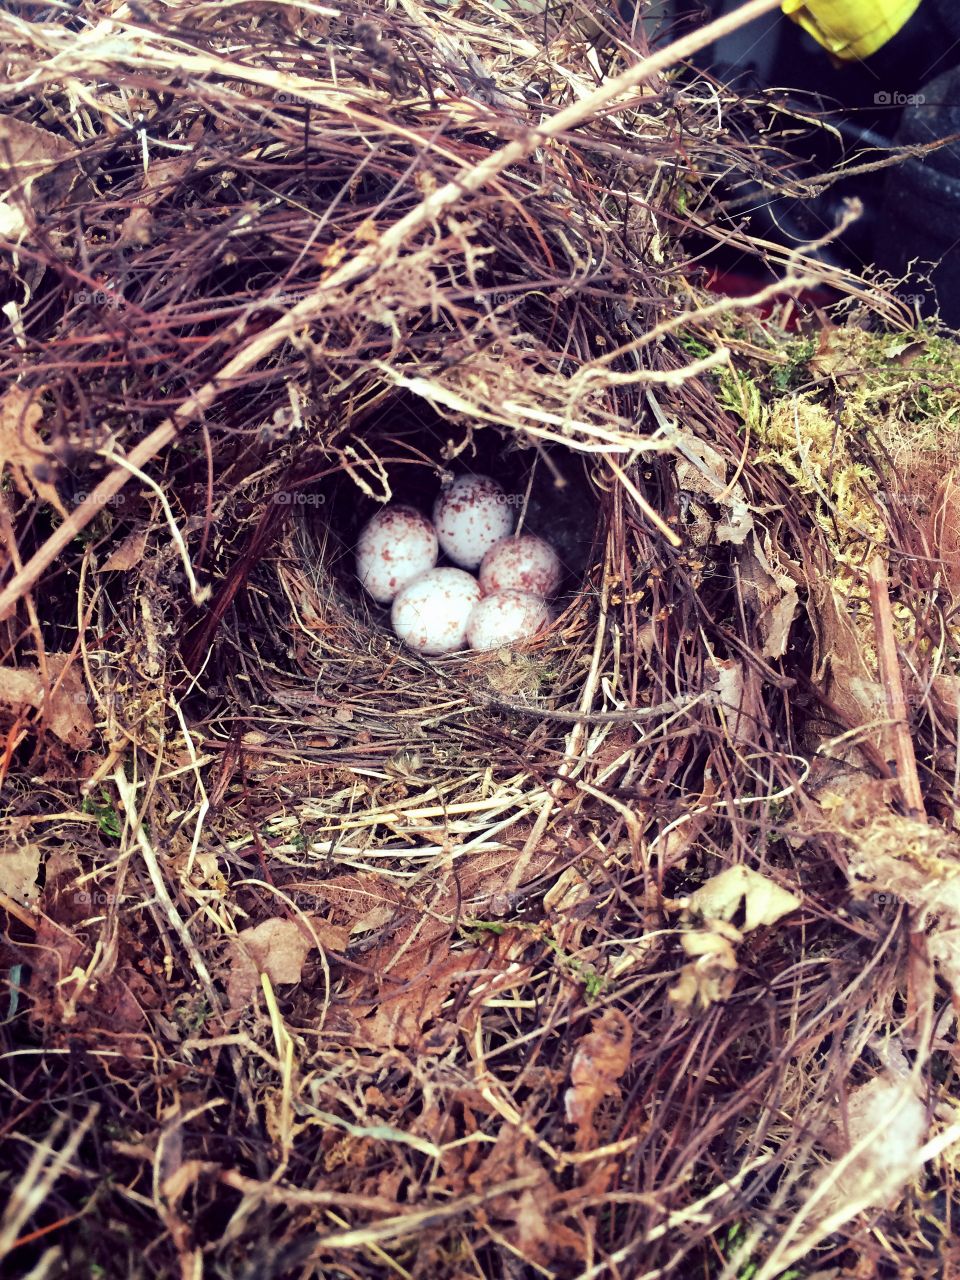 Nesting eggs 